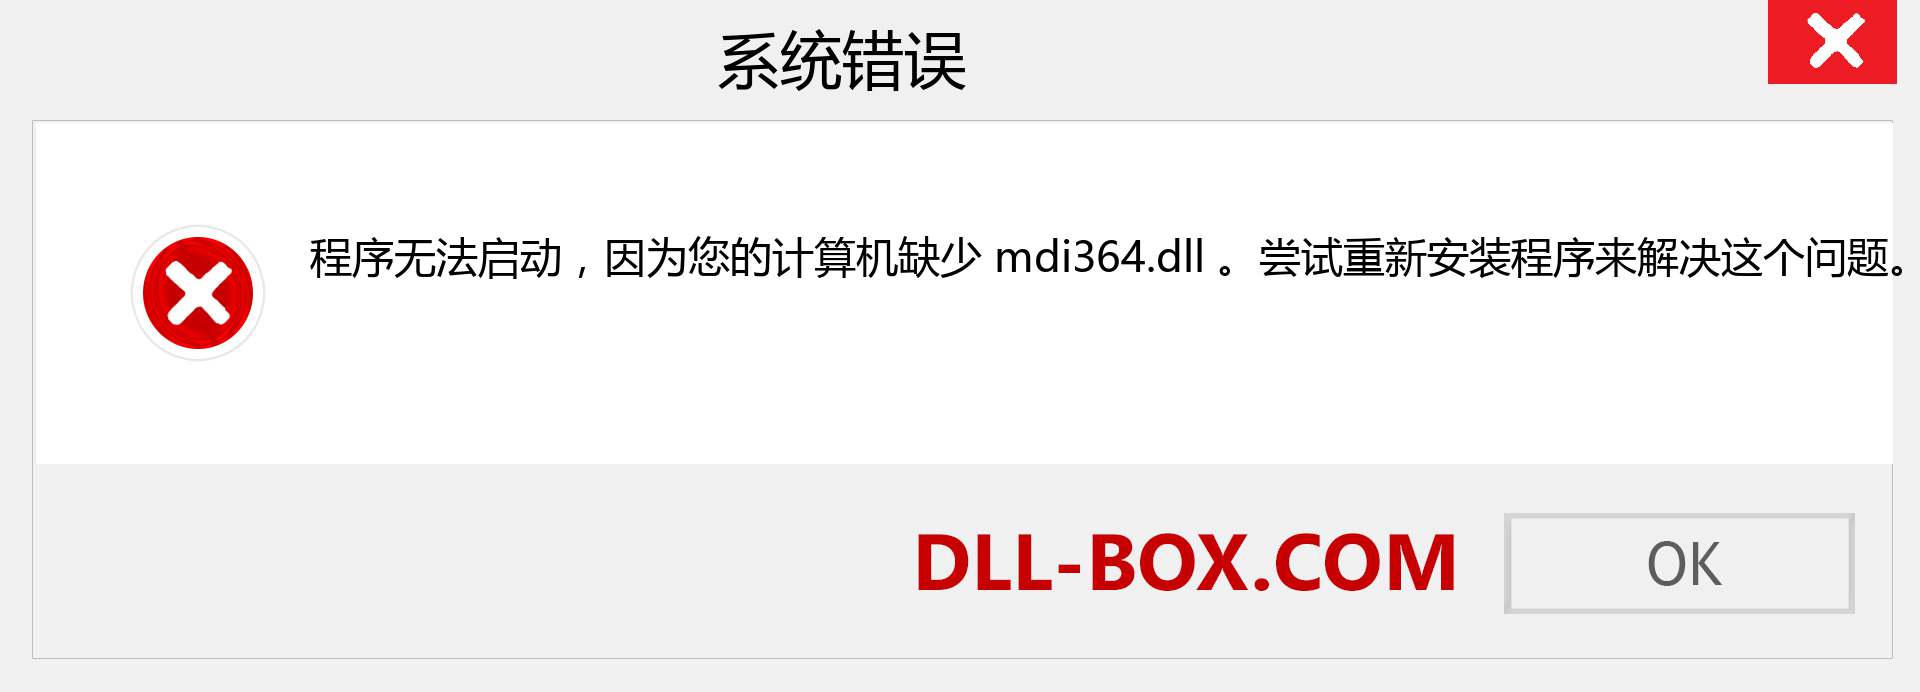 mdi364.dll 文件丢失？。 适用于 Windows 7、8、10 的下载 - 修复 Windows、照片、图像上的 mdi364 dll 丢失错误